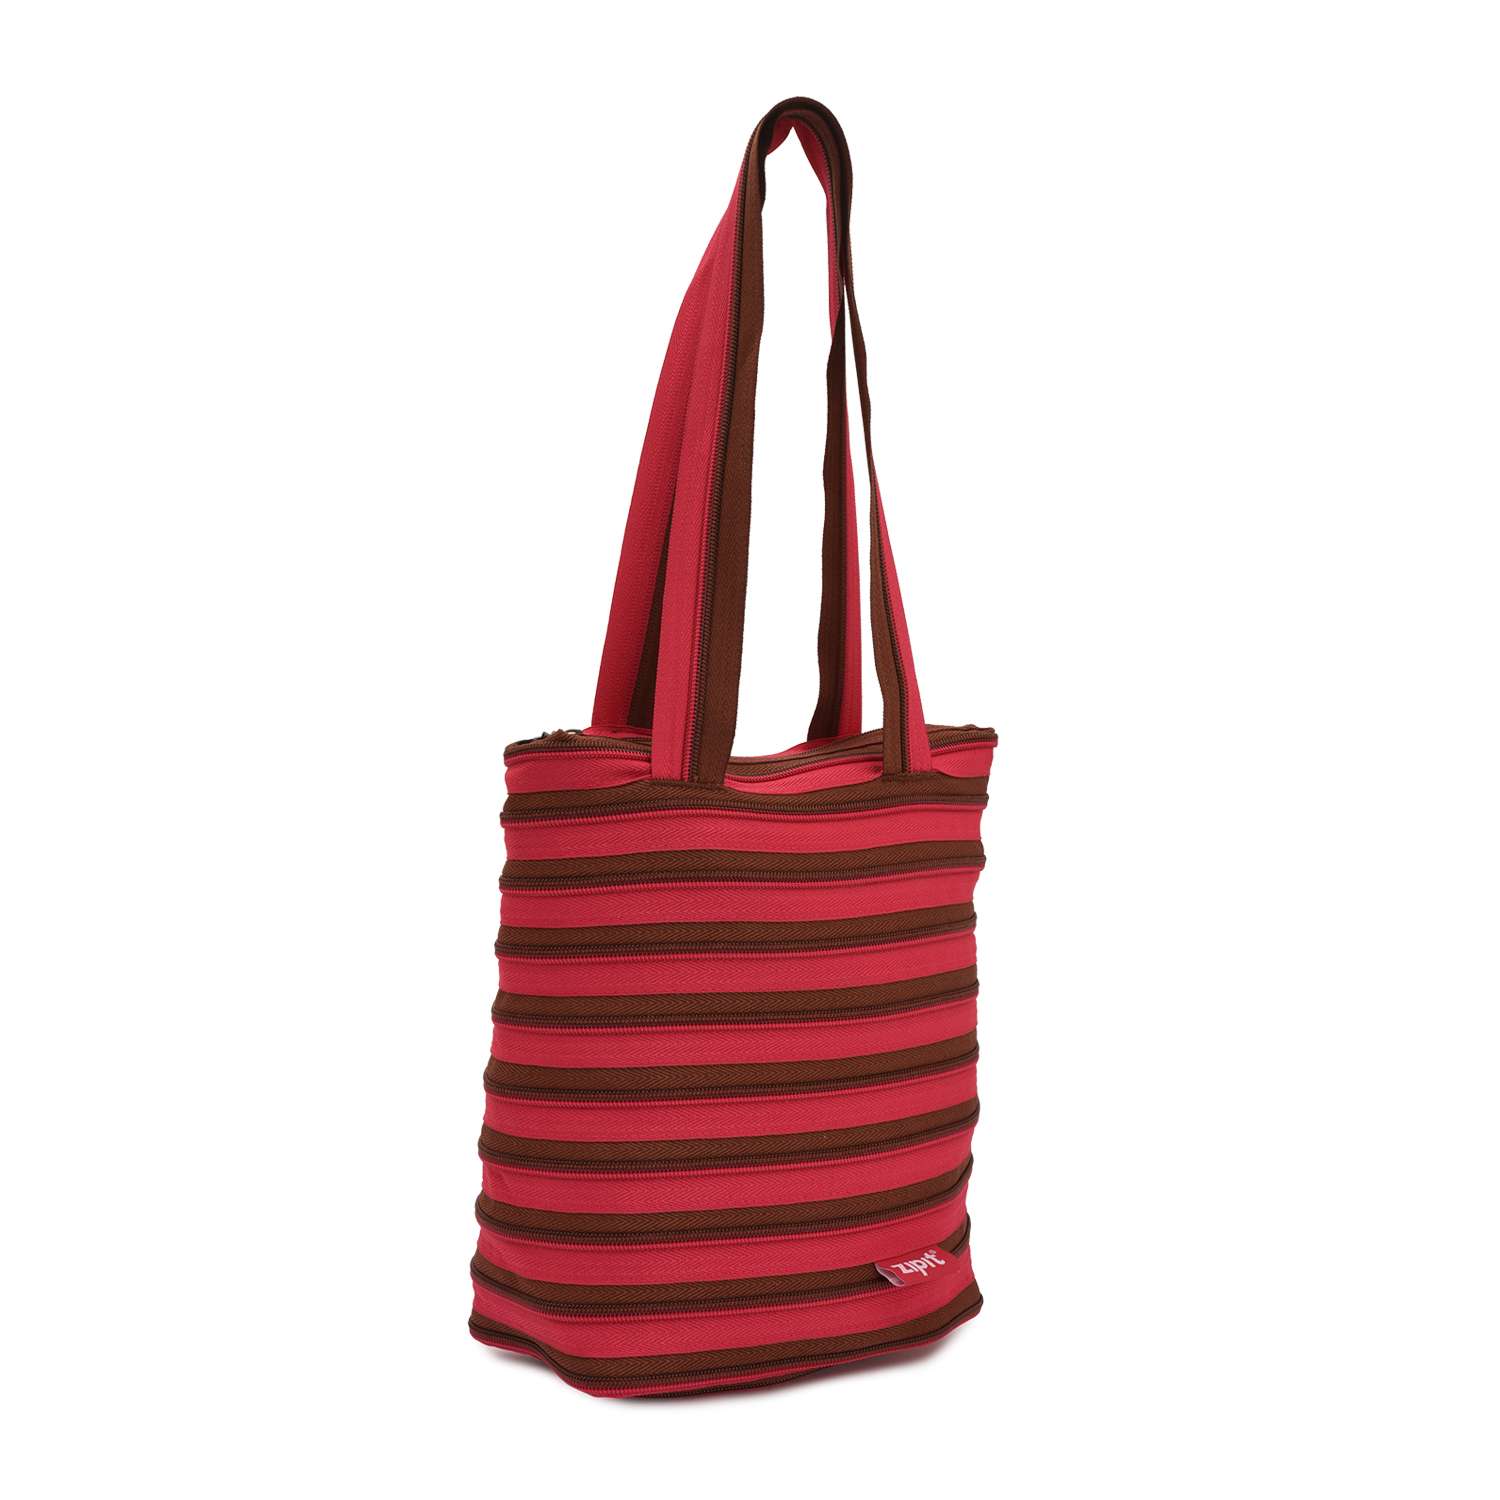 Сумка Zipit Premium Tote/Beach Bag цвет розовый/коричневый - фото 2